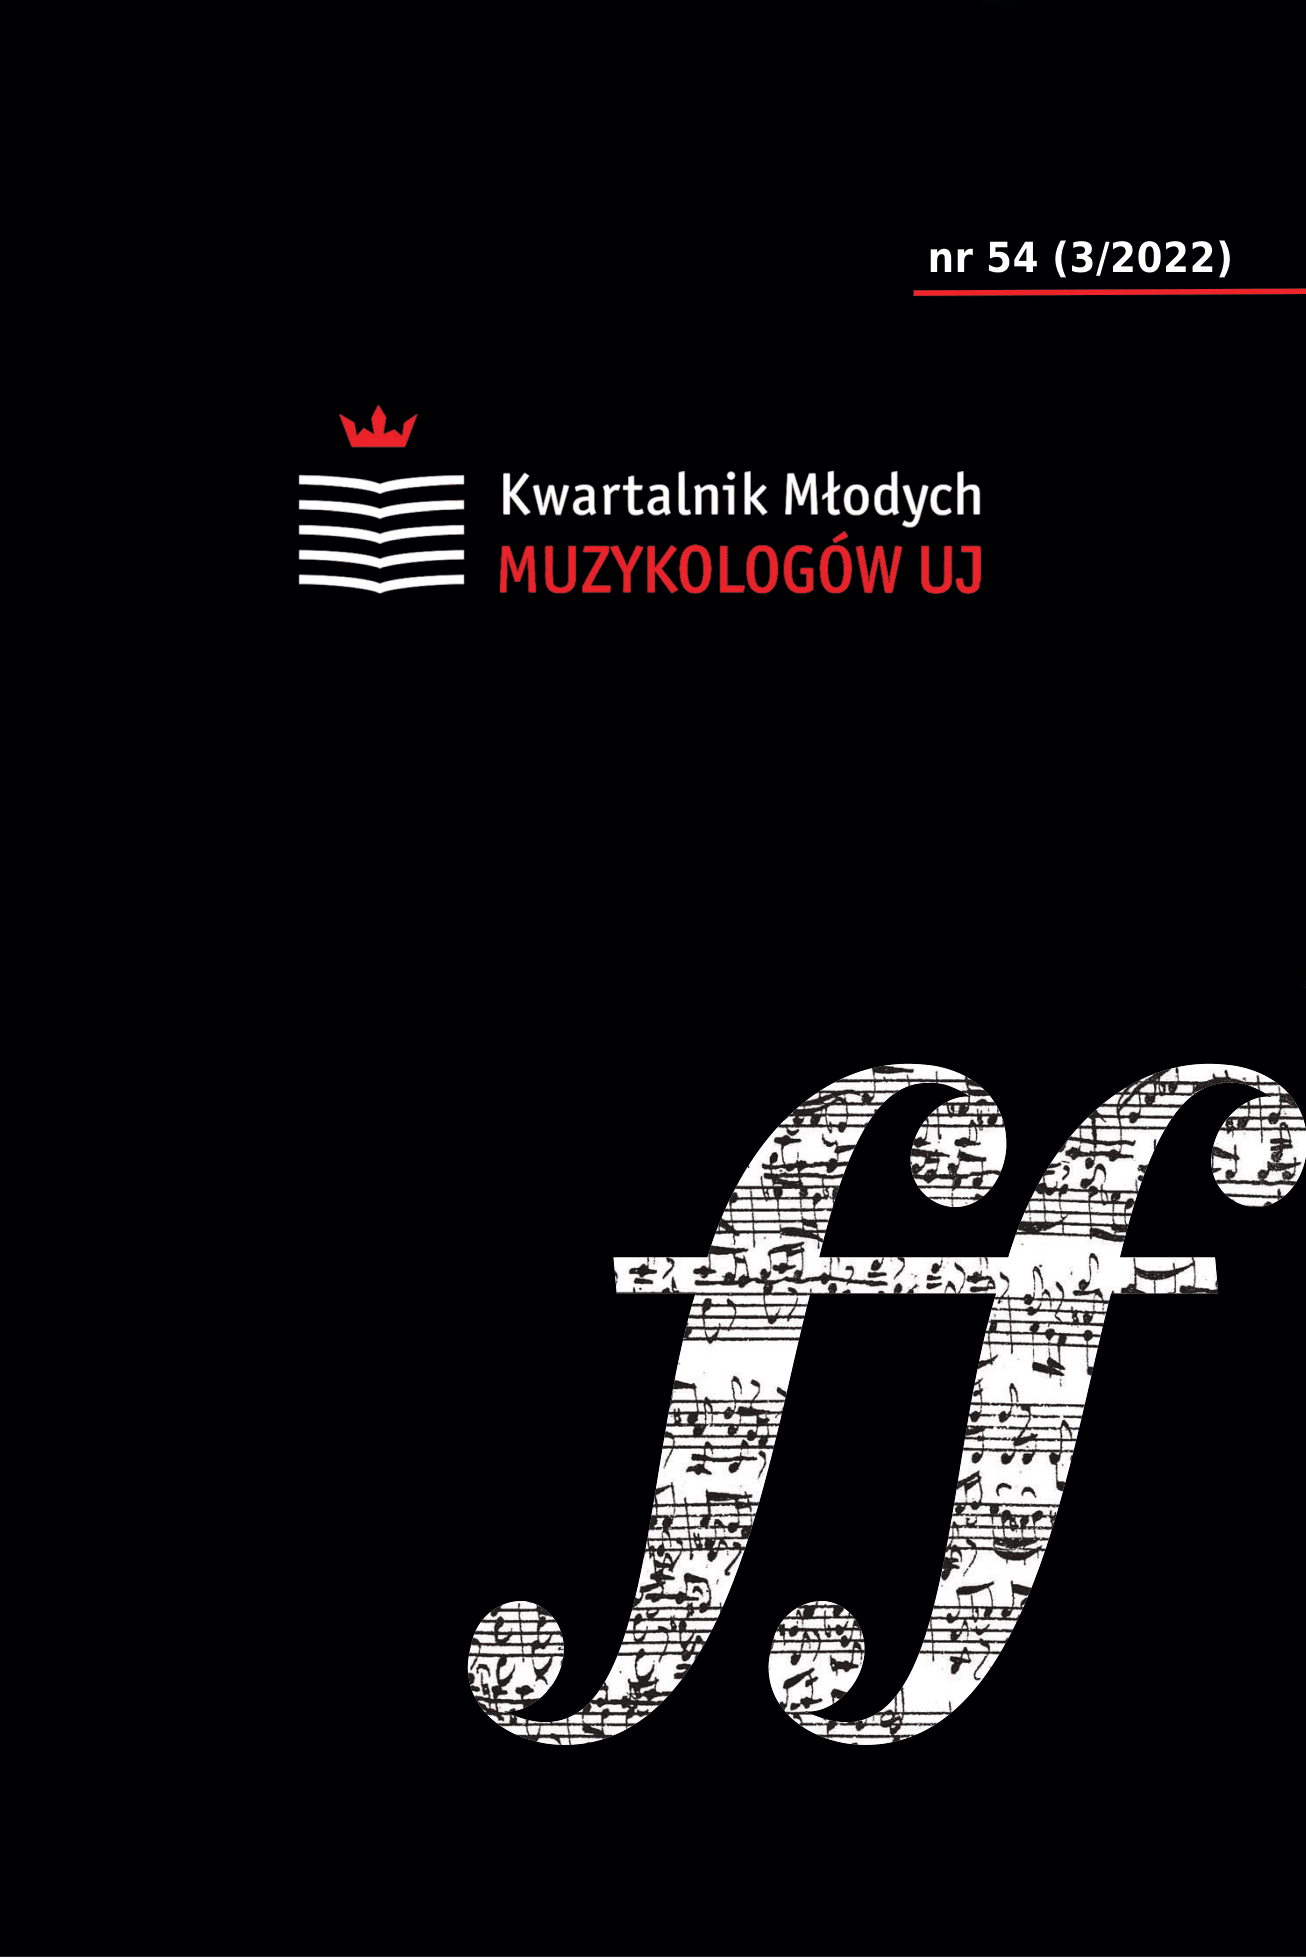 Wybrane aspekty działalności Galicyjskiego Towarzystwa Muzycznego we Lwowie